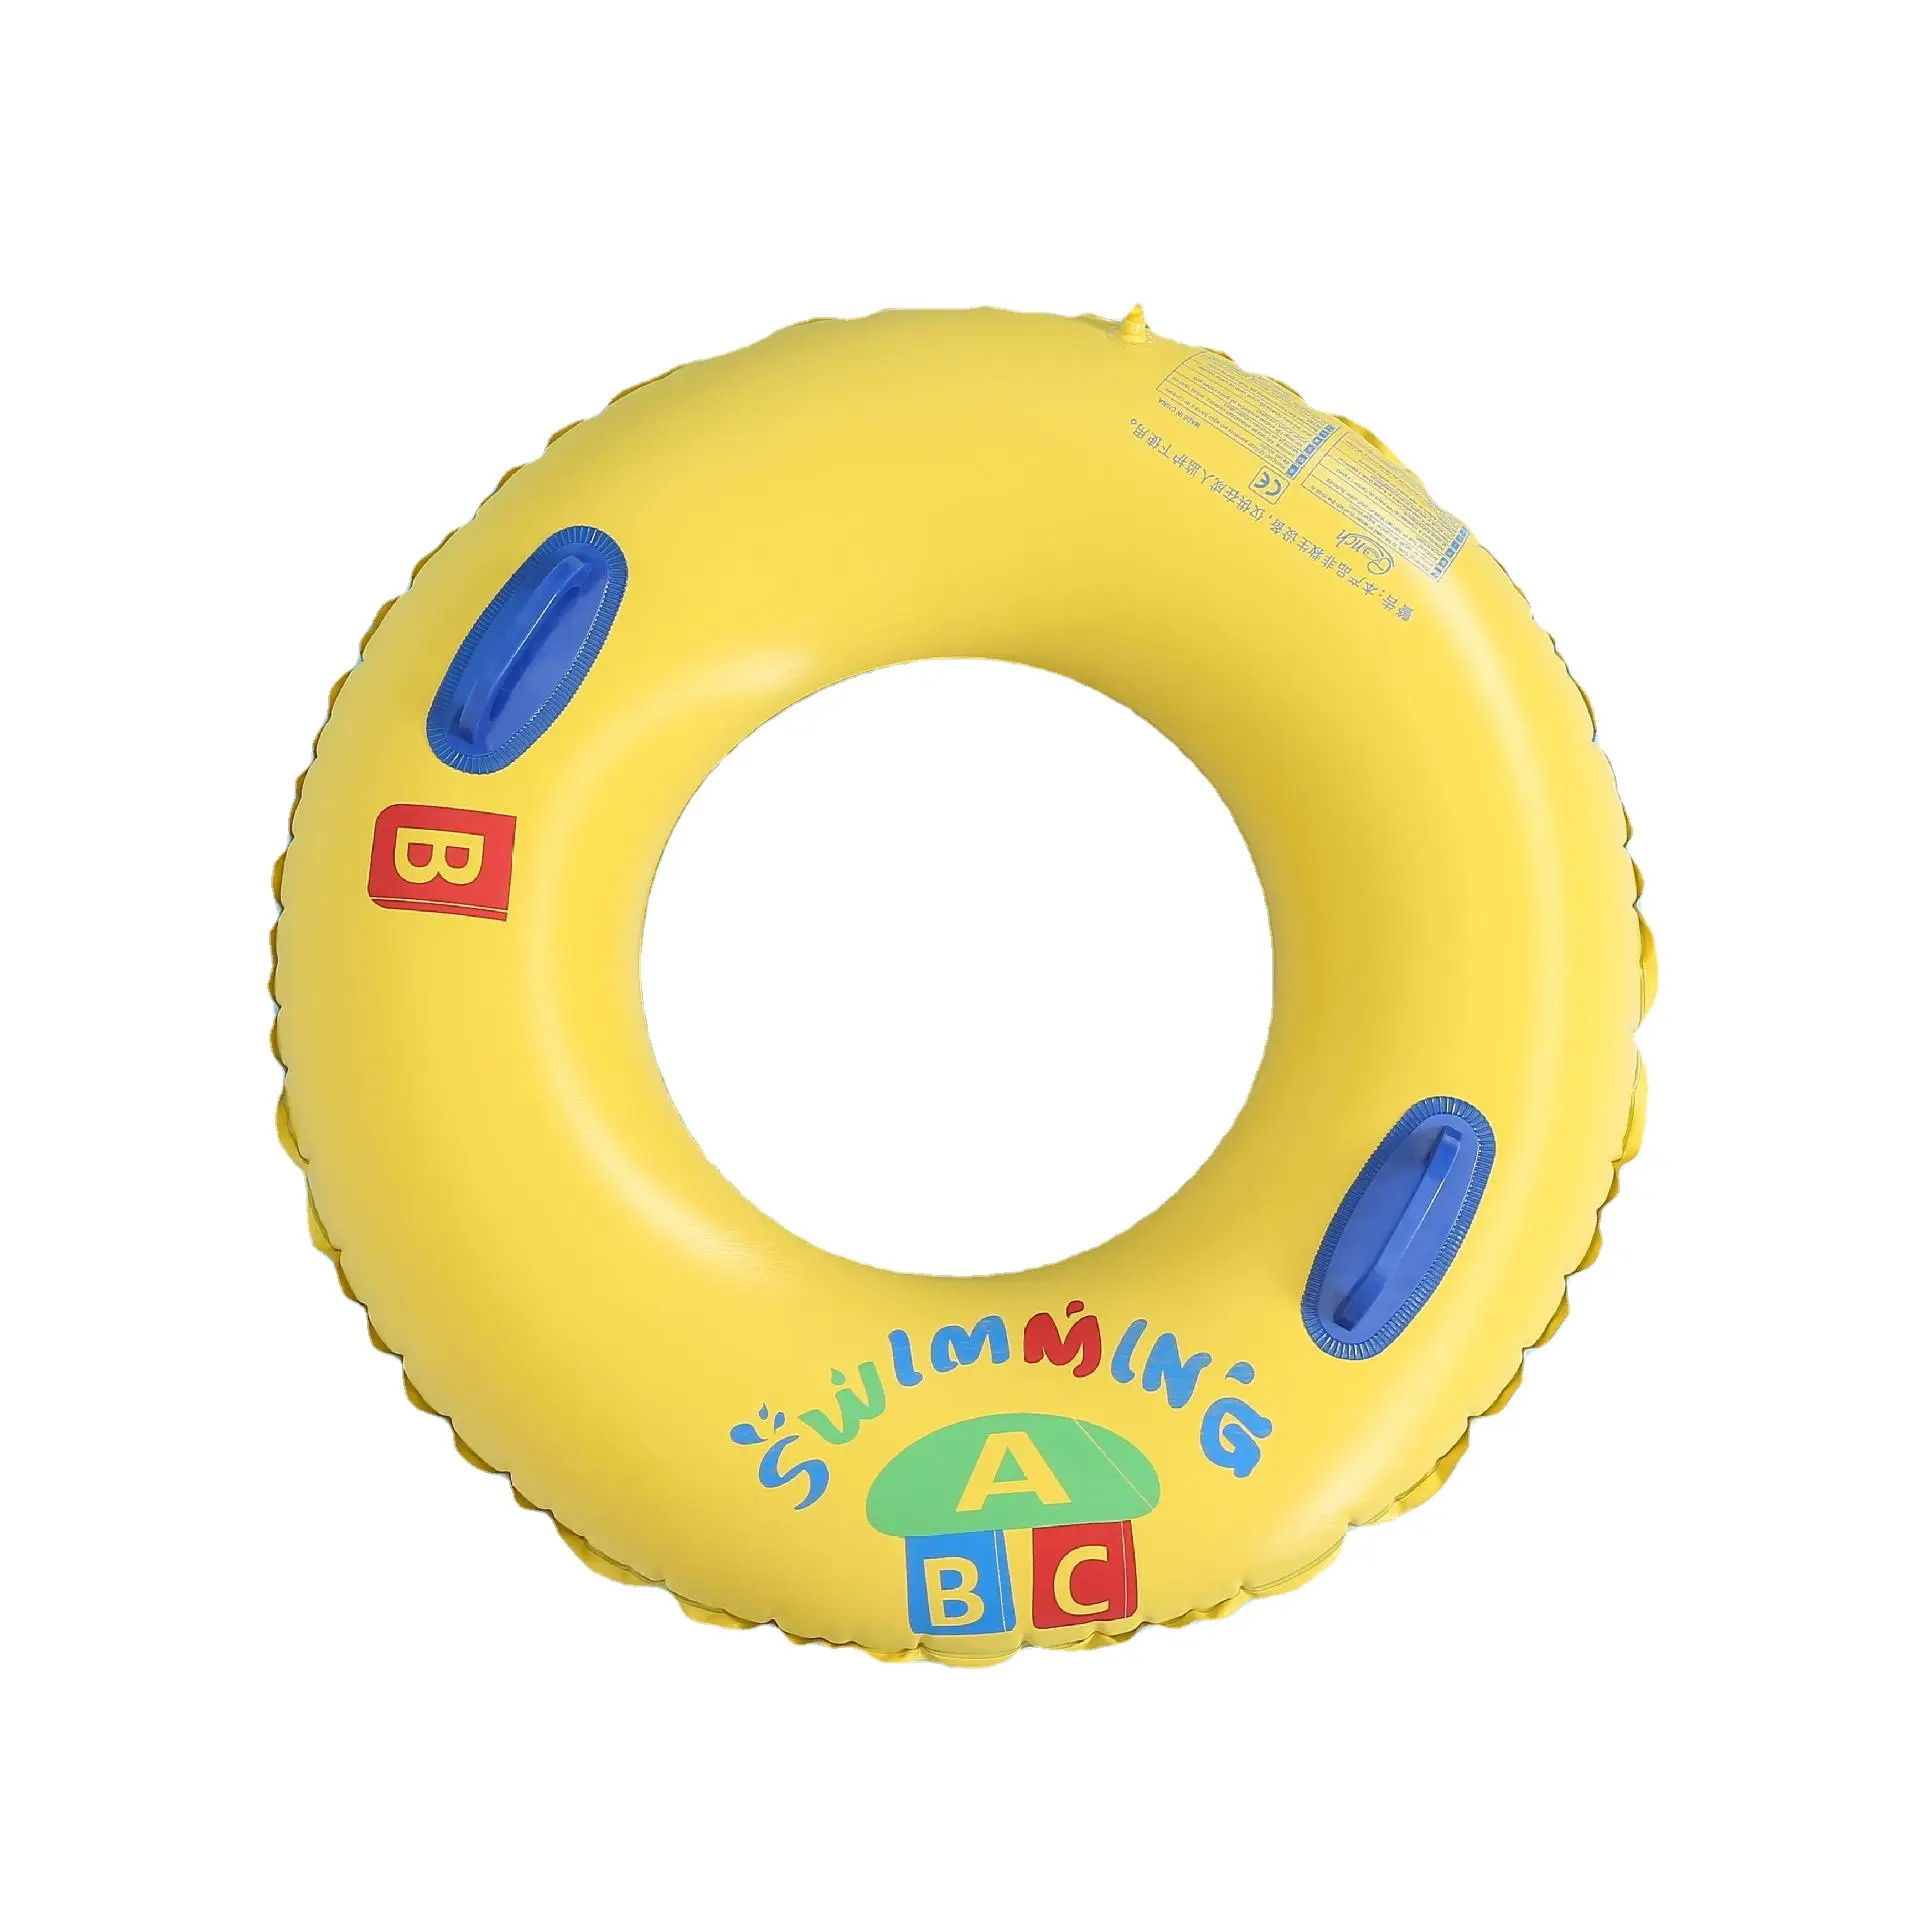 B01 ragazza per adulti vacanze estive spiaggia festa piscina acqua pally giocattolo tubo gonfiabile giallo ABC nuoto anello pcp scuba